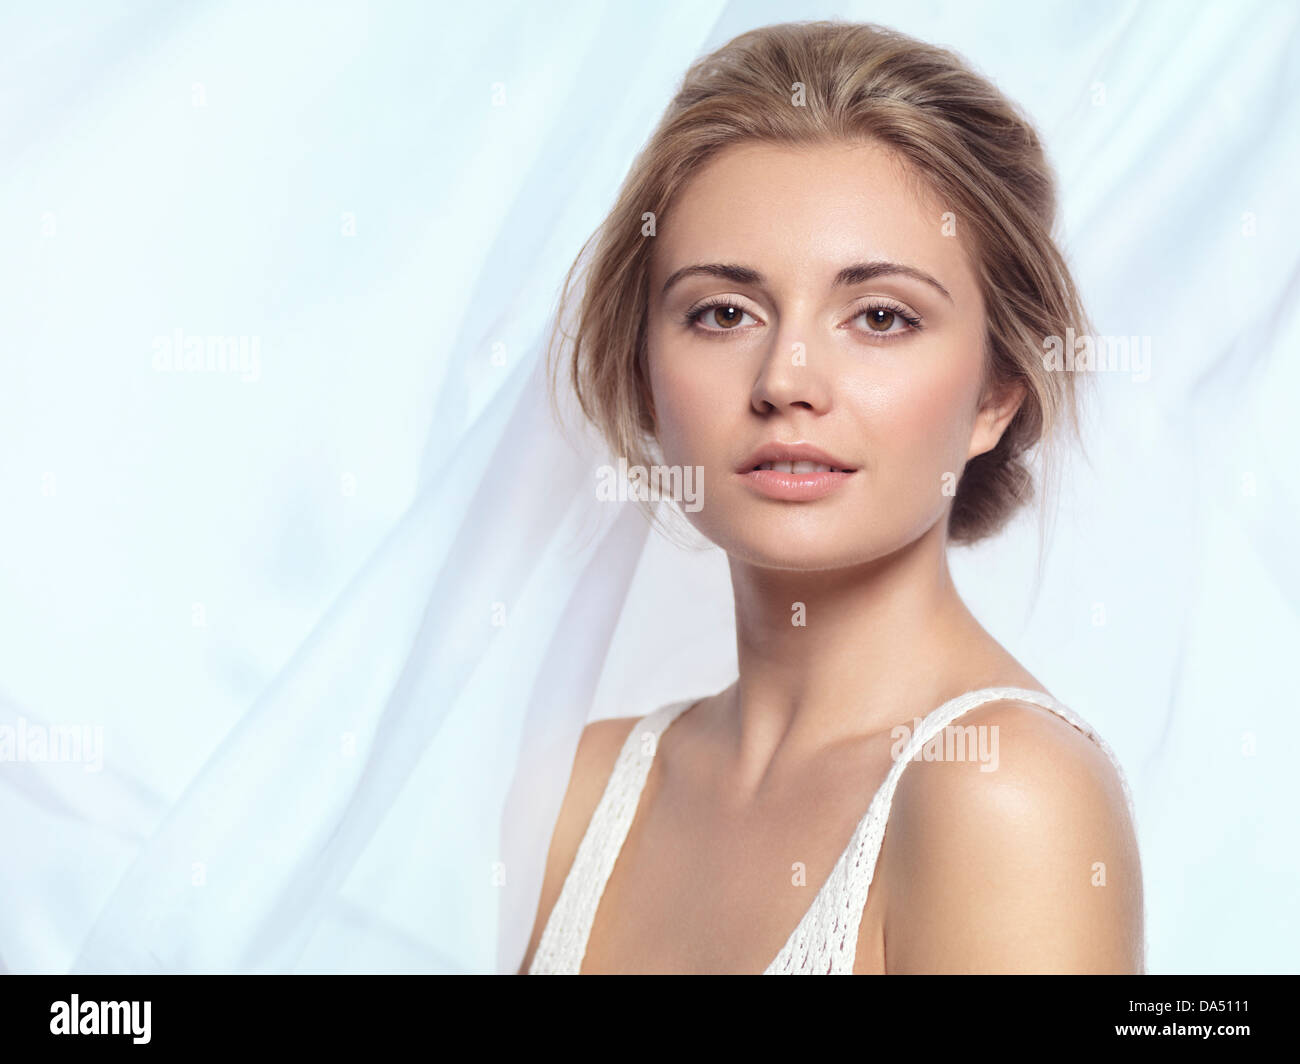 Führerschein und Drucke bei MaximImages.com - Schönheitsporträt einer jungen Frau mit entspanntem Gesicht, natürlichem, sauberem Make-up und zeitgenössischem Haarschnitt über Weiß Stockfoto